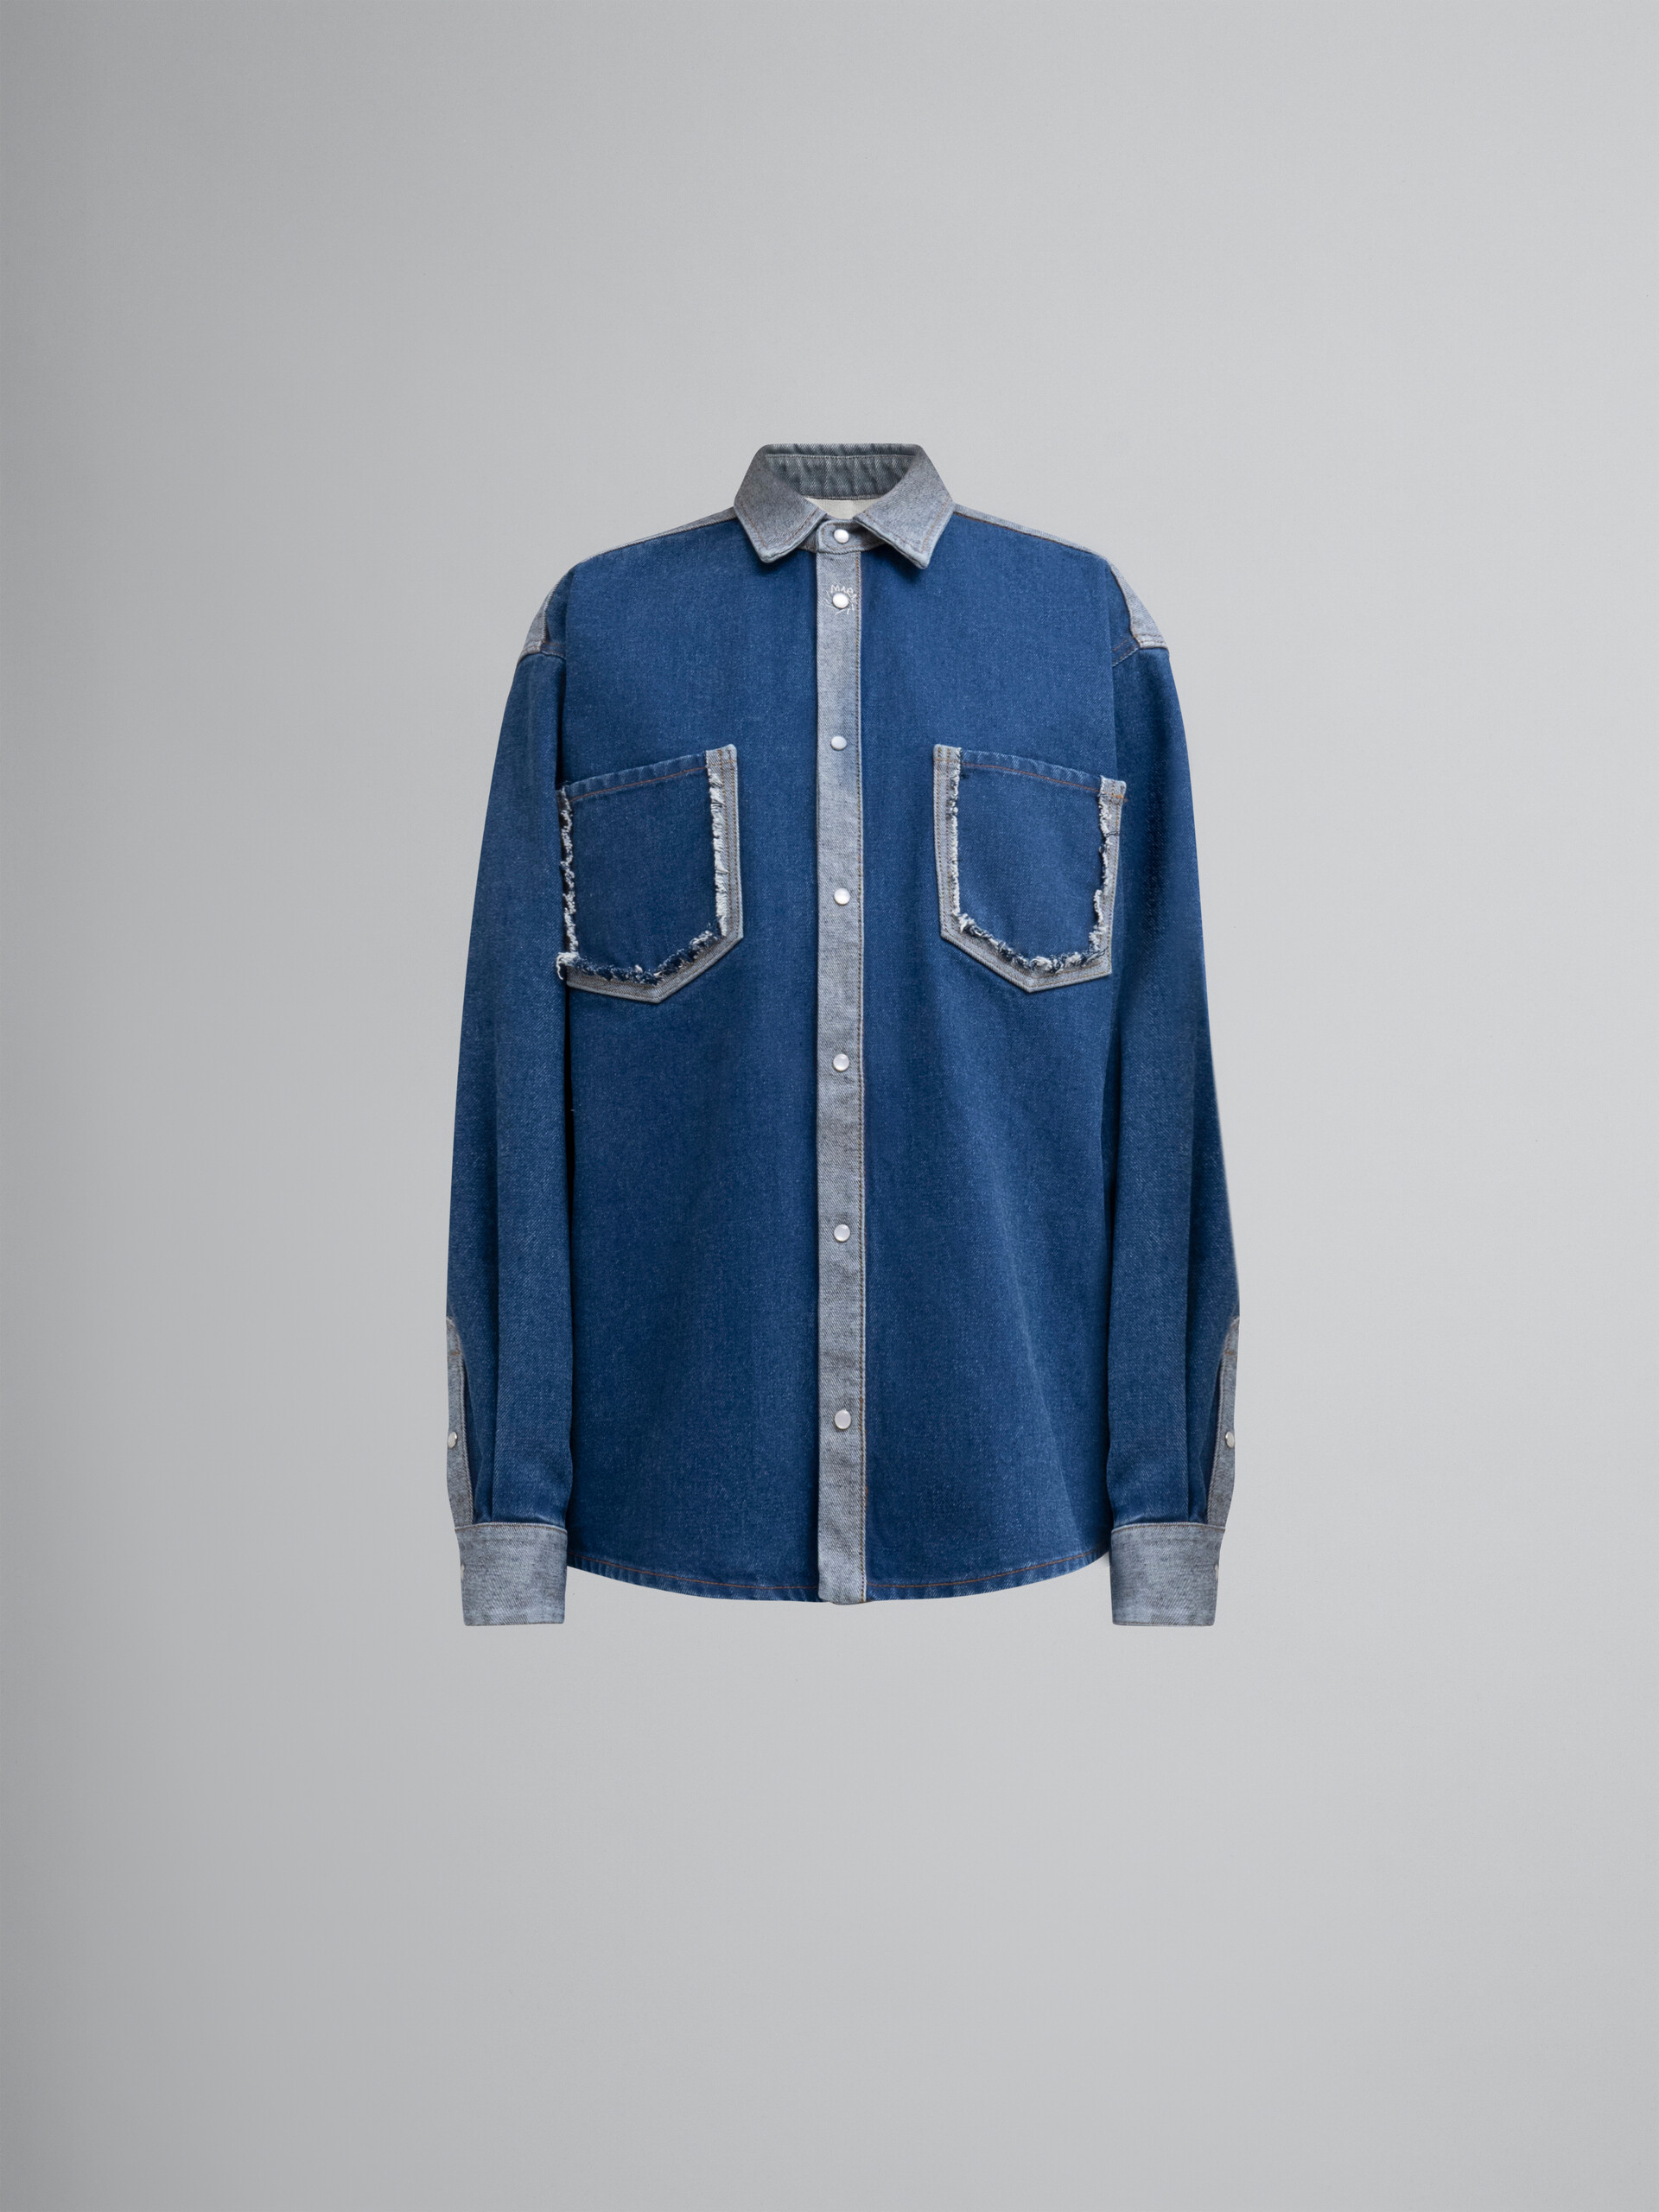 Camicia in denim bicolore blu con bordi a taglio vivo - Camicie - Image 1